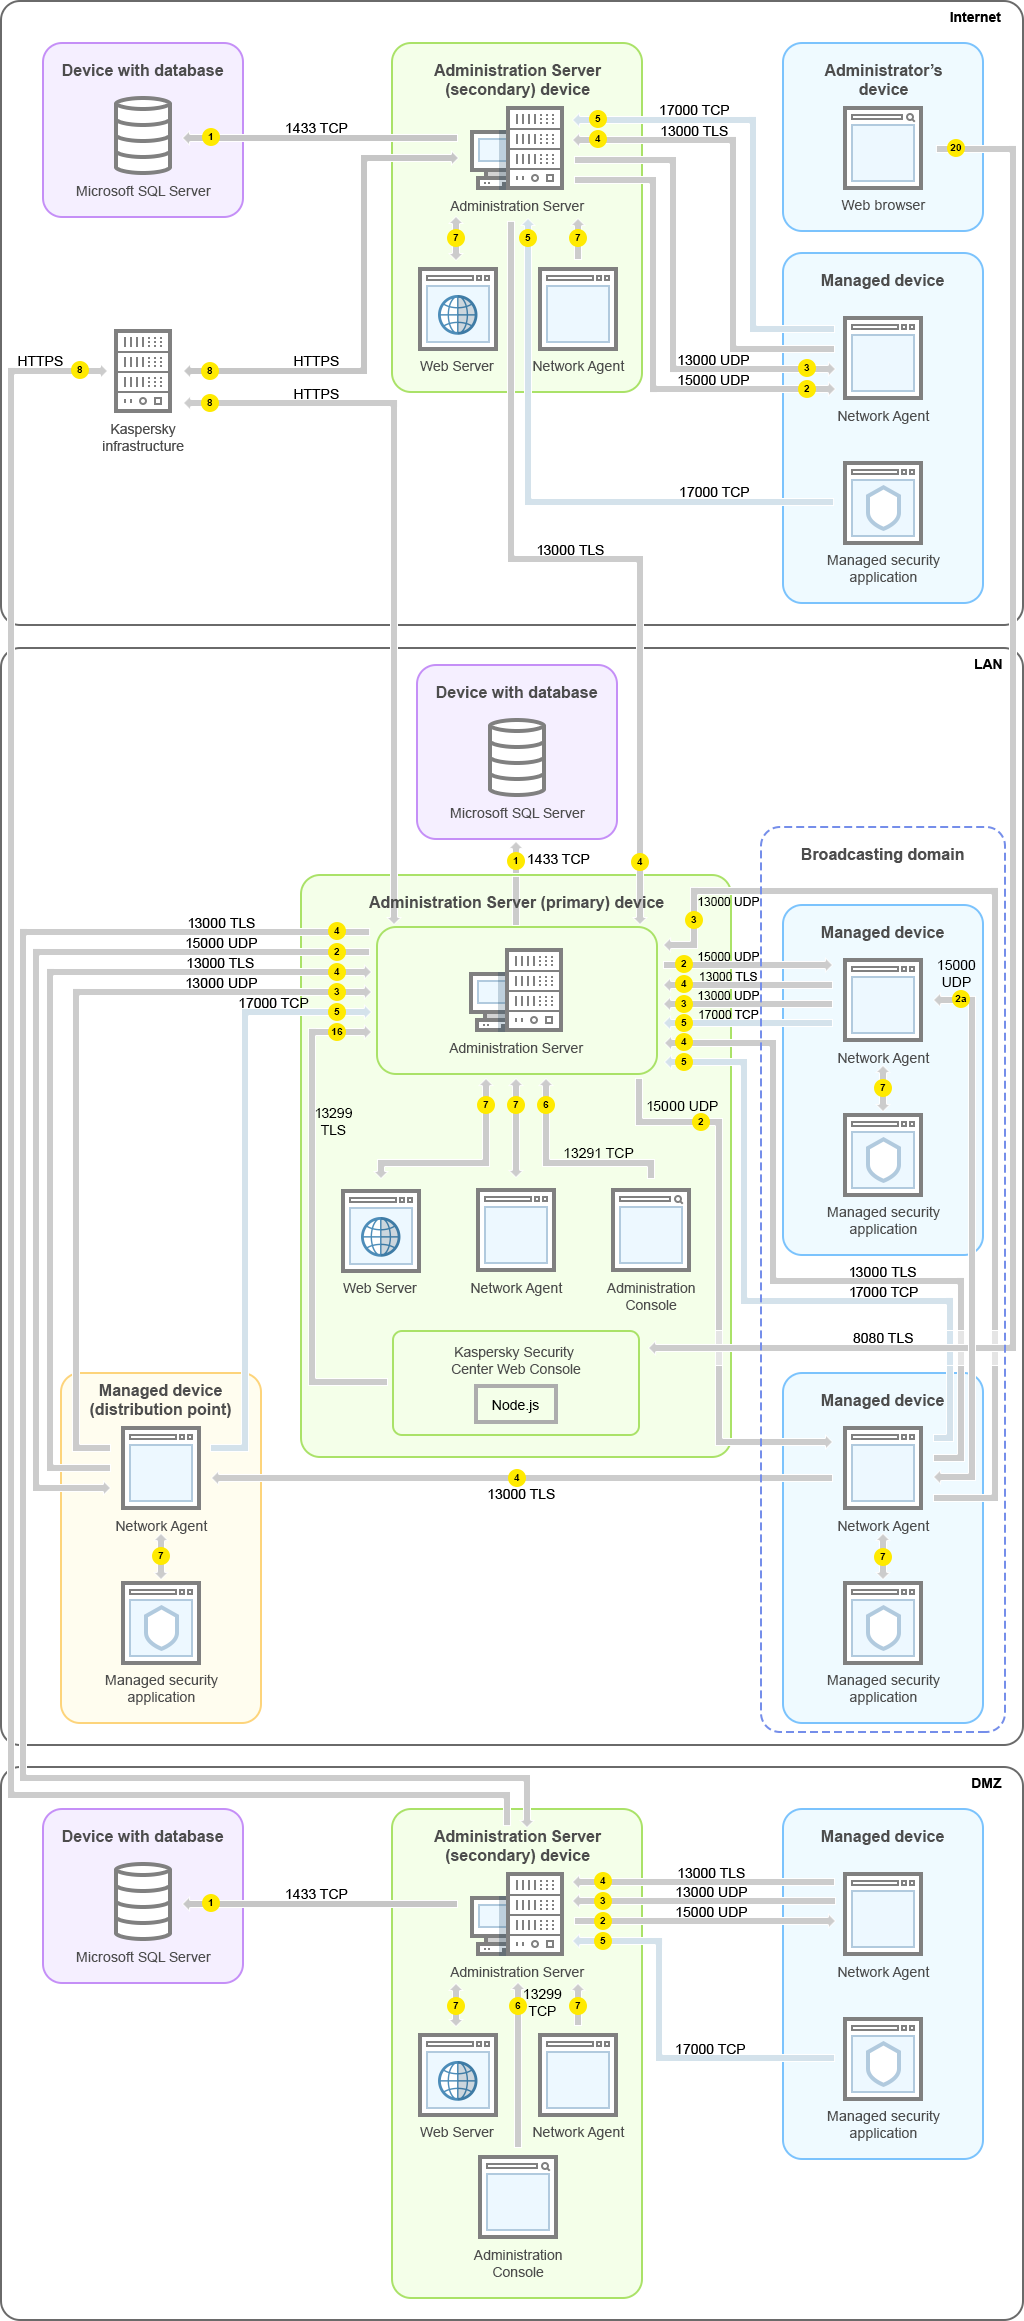 主管理伺服器及其受管理裝置在 LAN 上，從屬管理員伺服器及其受管理裝置在 DMZ 中，另一台從屬管理伺服器、其受管理裝置和管理員裝置在網際網路上。